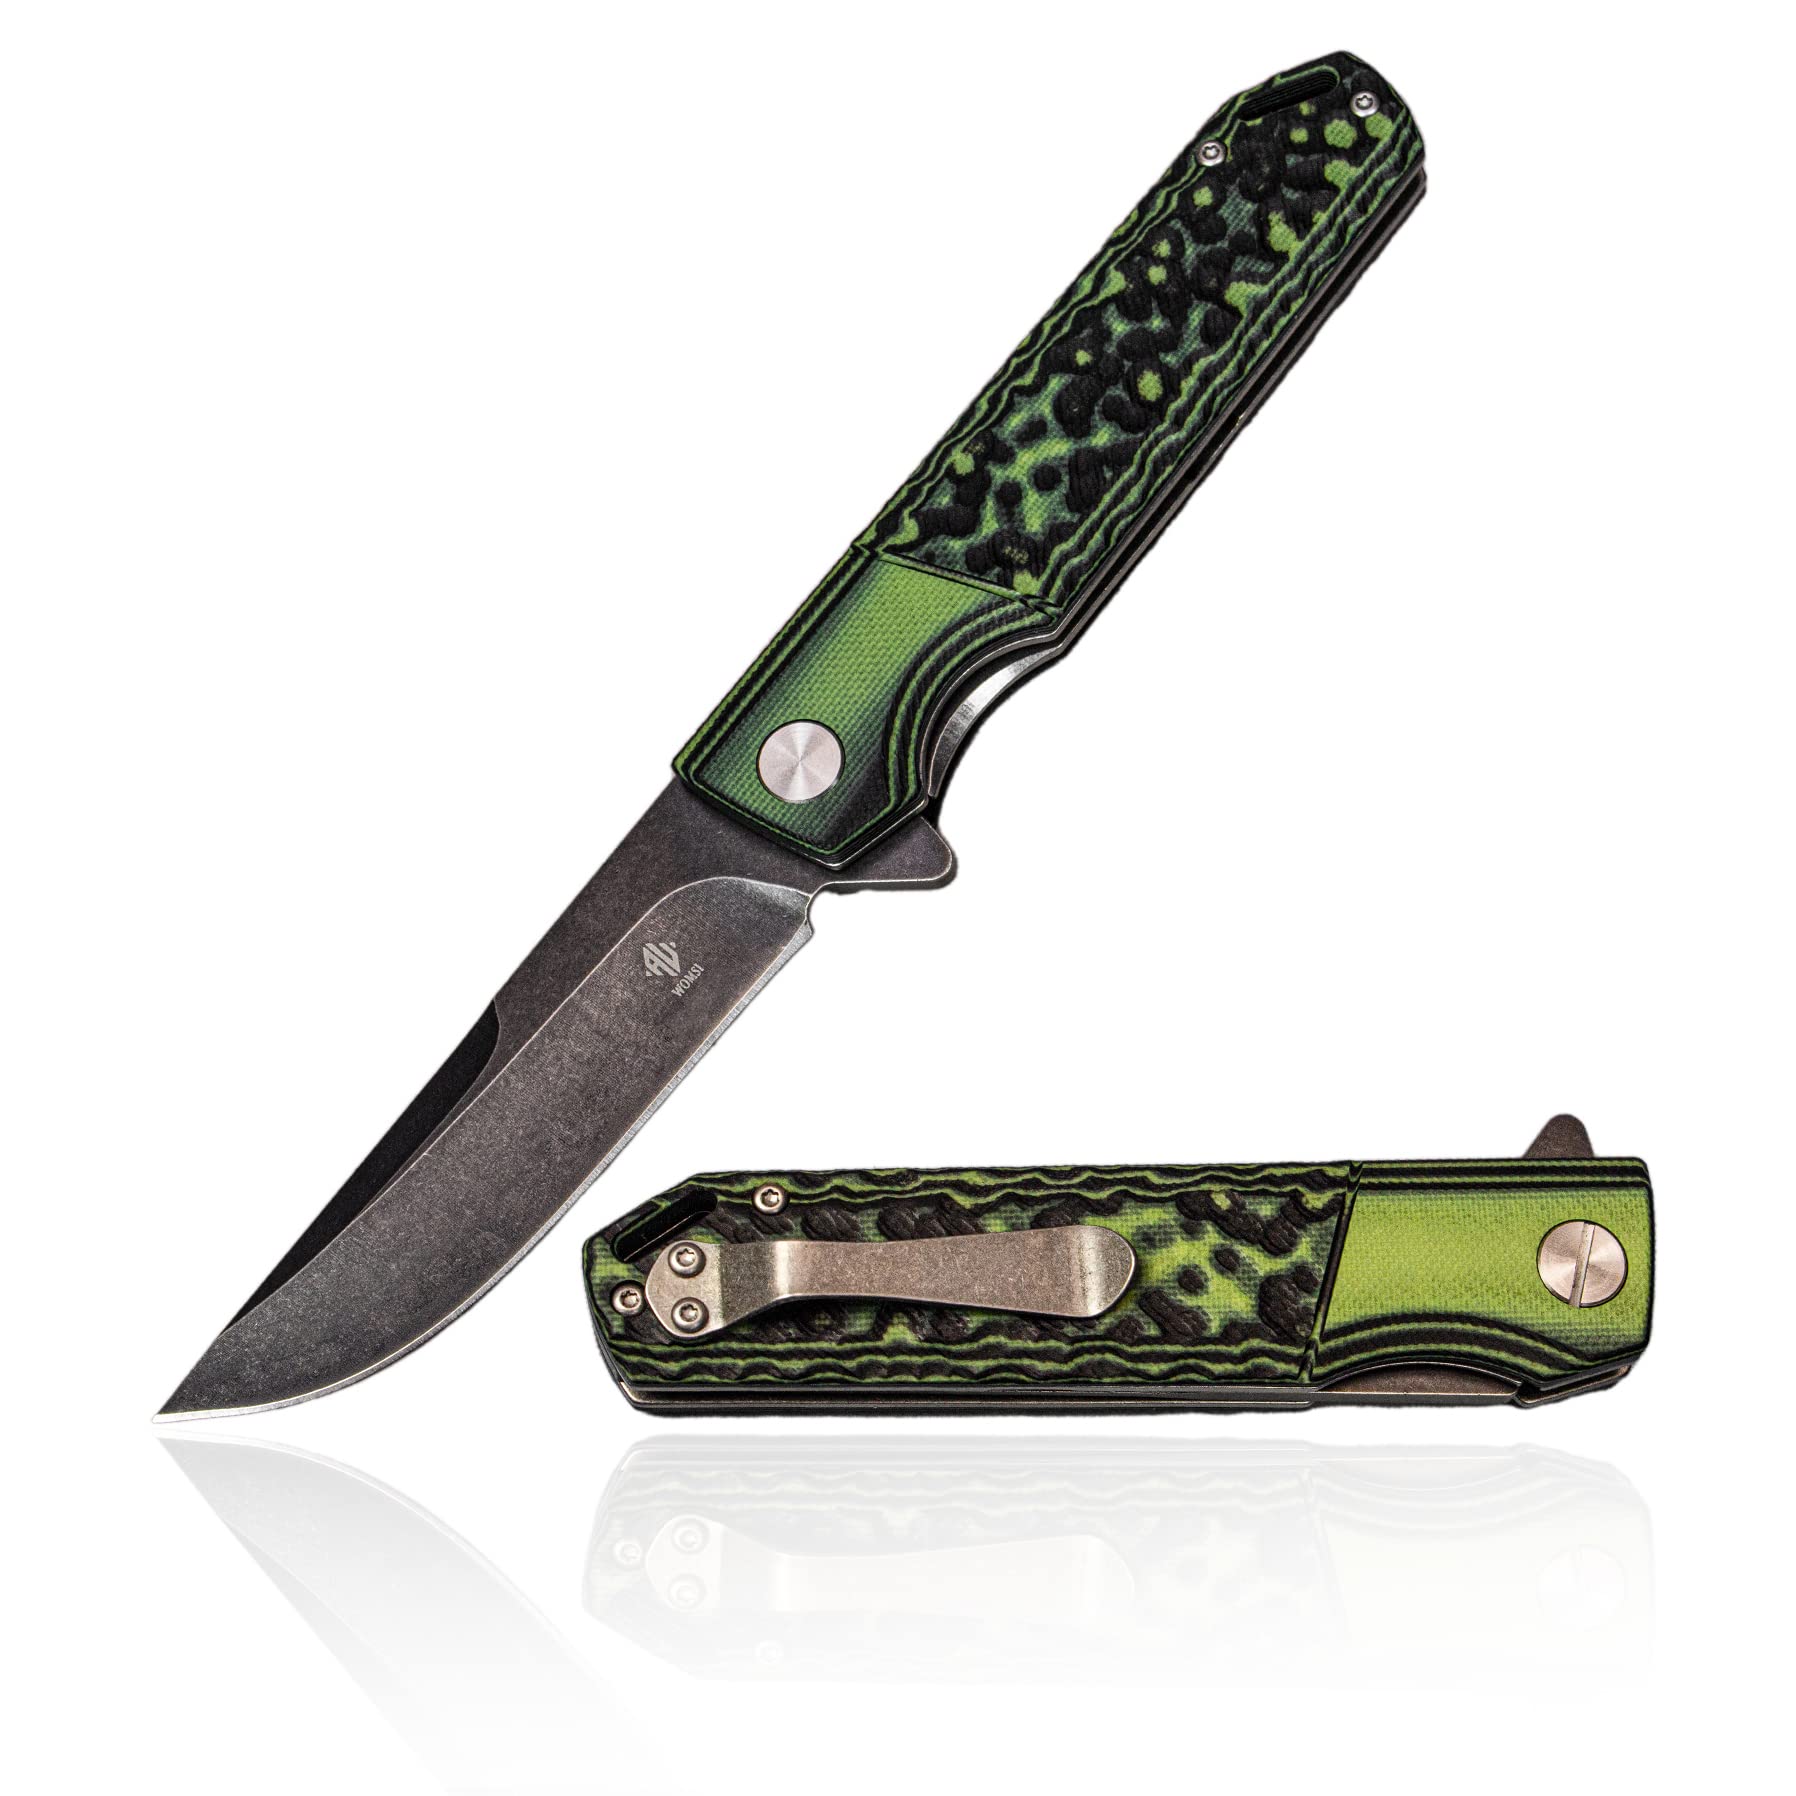  Alibuy 3 Ceramic Folding Knife Utility Knife (Blade